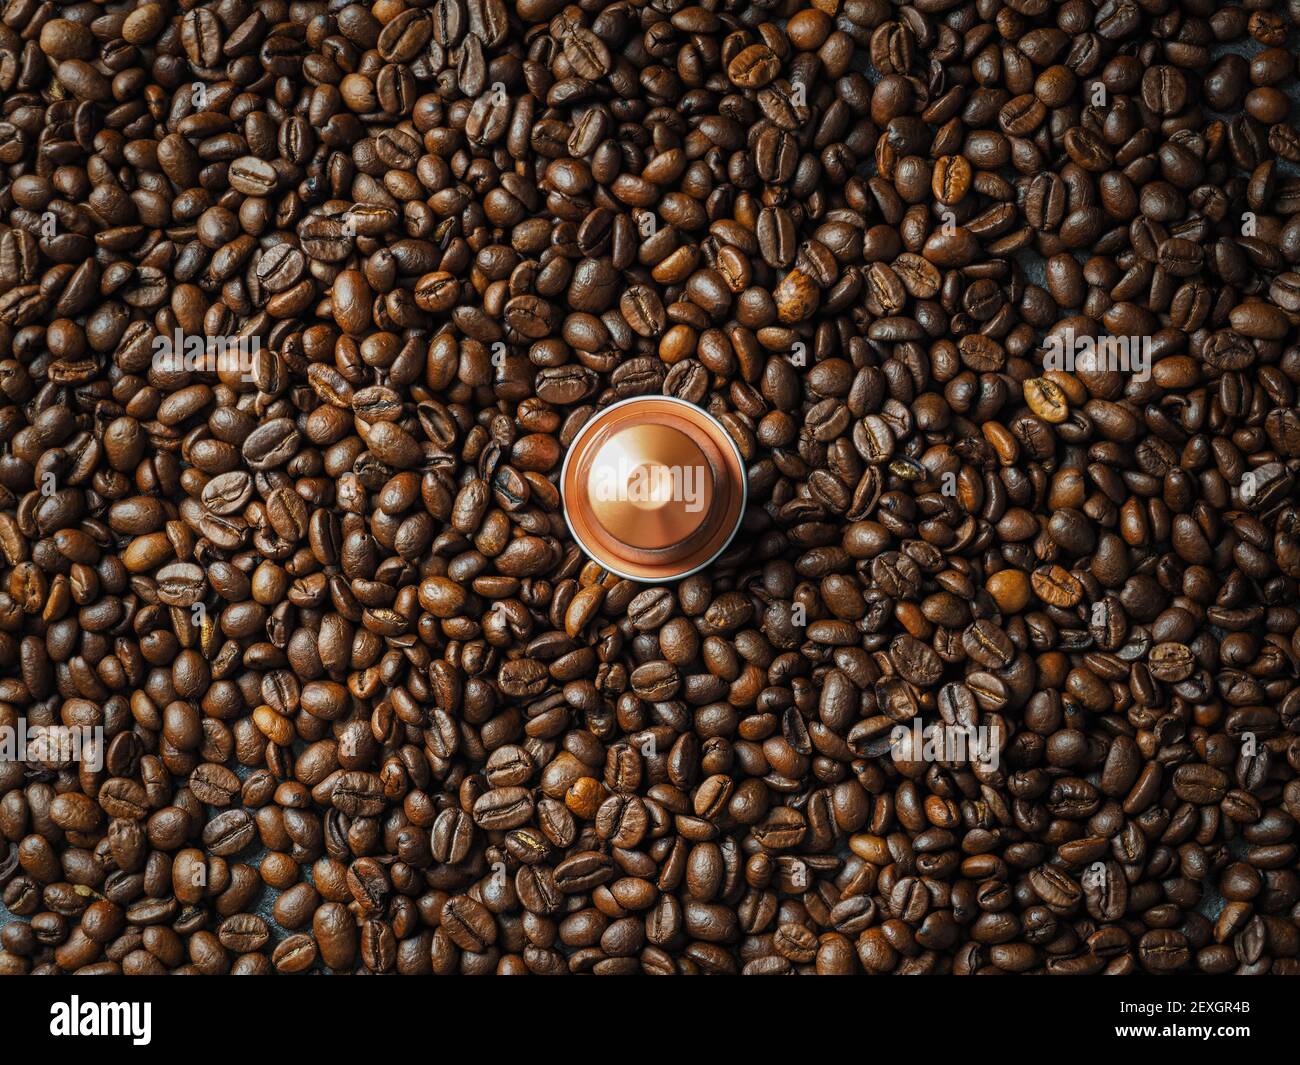 Une capsule espresso italien dorée recyclable sur une pile de grains de café torréfiés. Vue de dessus. Banque D'Images